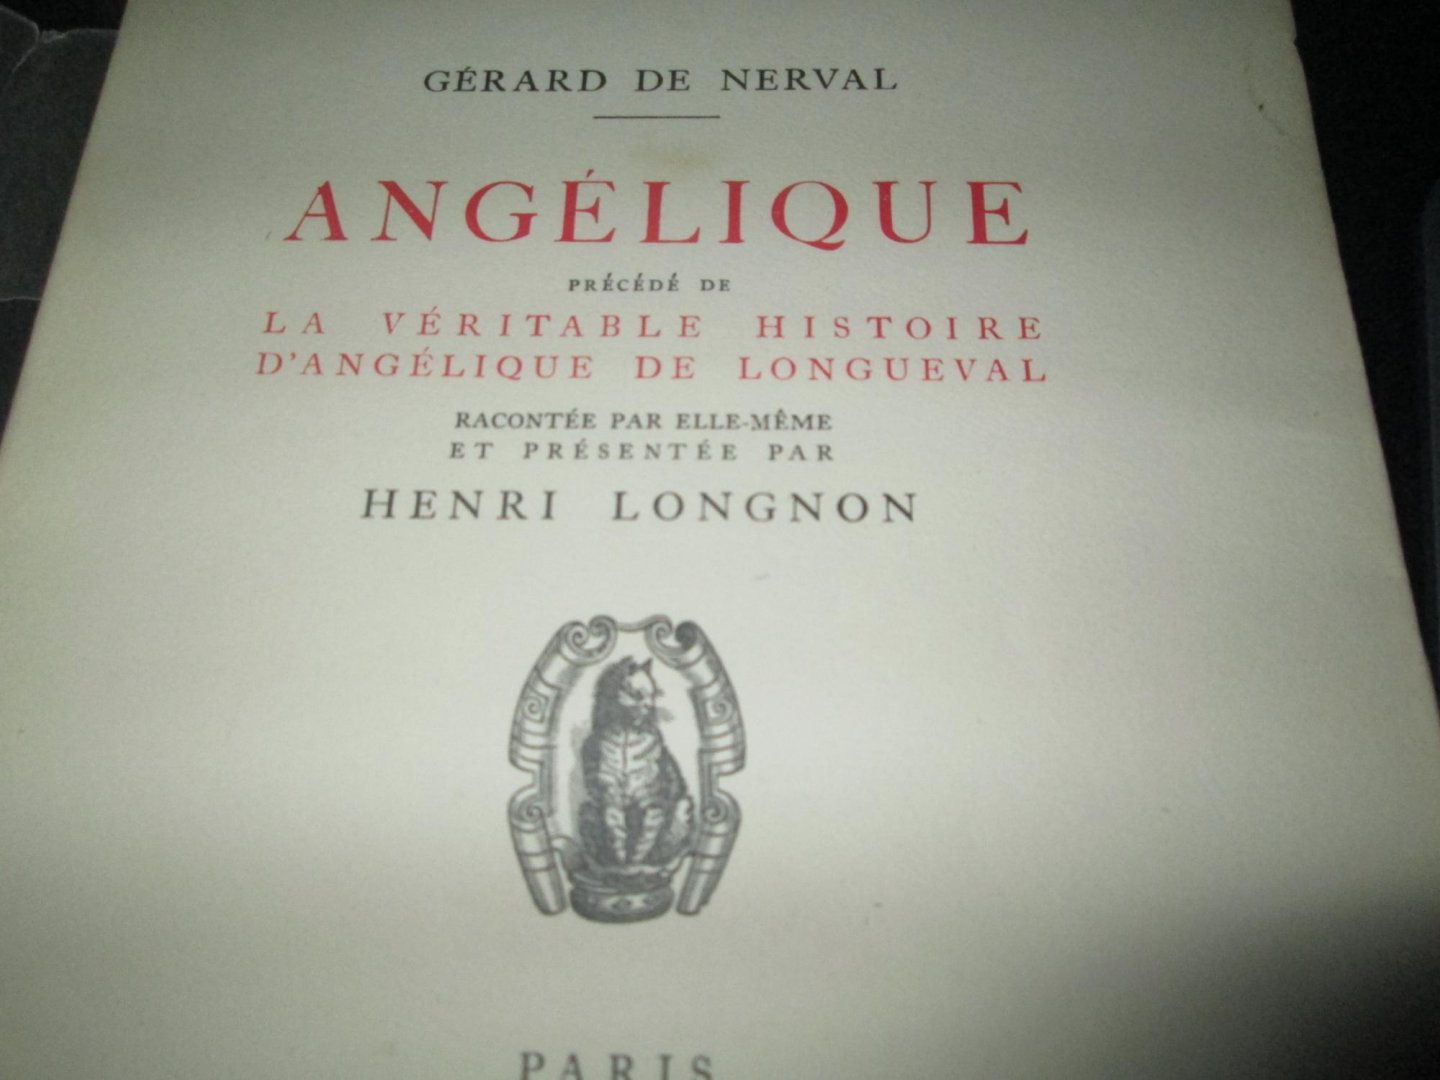 Nerval, Gérard de - Angélique, précédé de La véritable histoire d'Angélique de Longueval